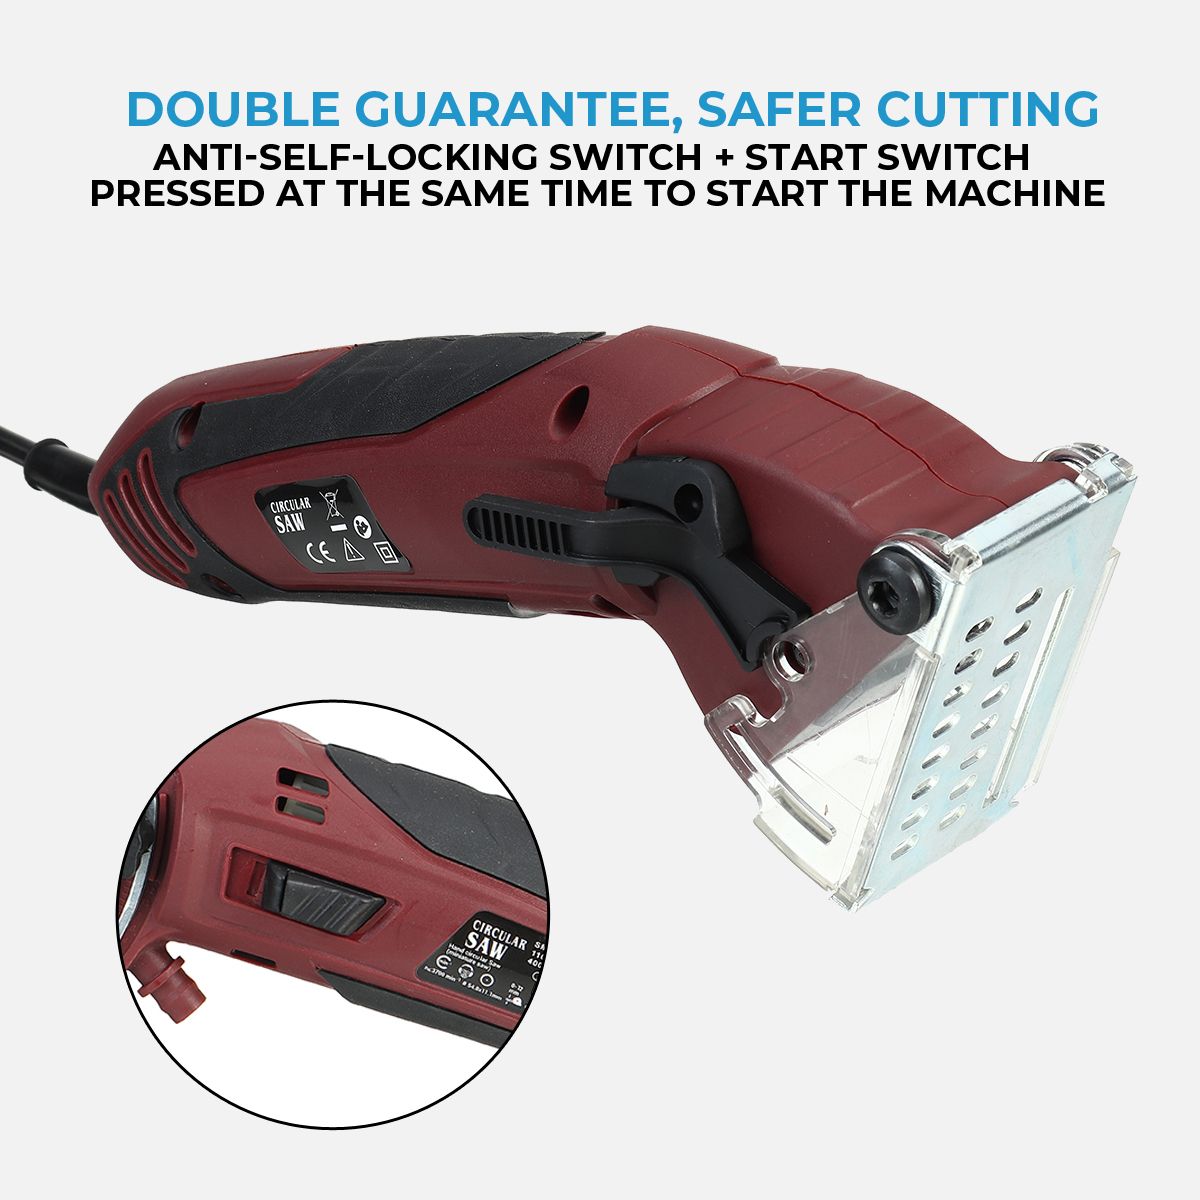 Mini-Cutting-Machine-Electric-Laser-Circular-Saw-Multi-Functional-Handheld-Grinder-Kit-Carpenter-Woo-1760084